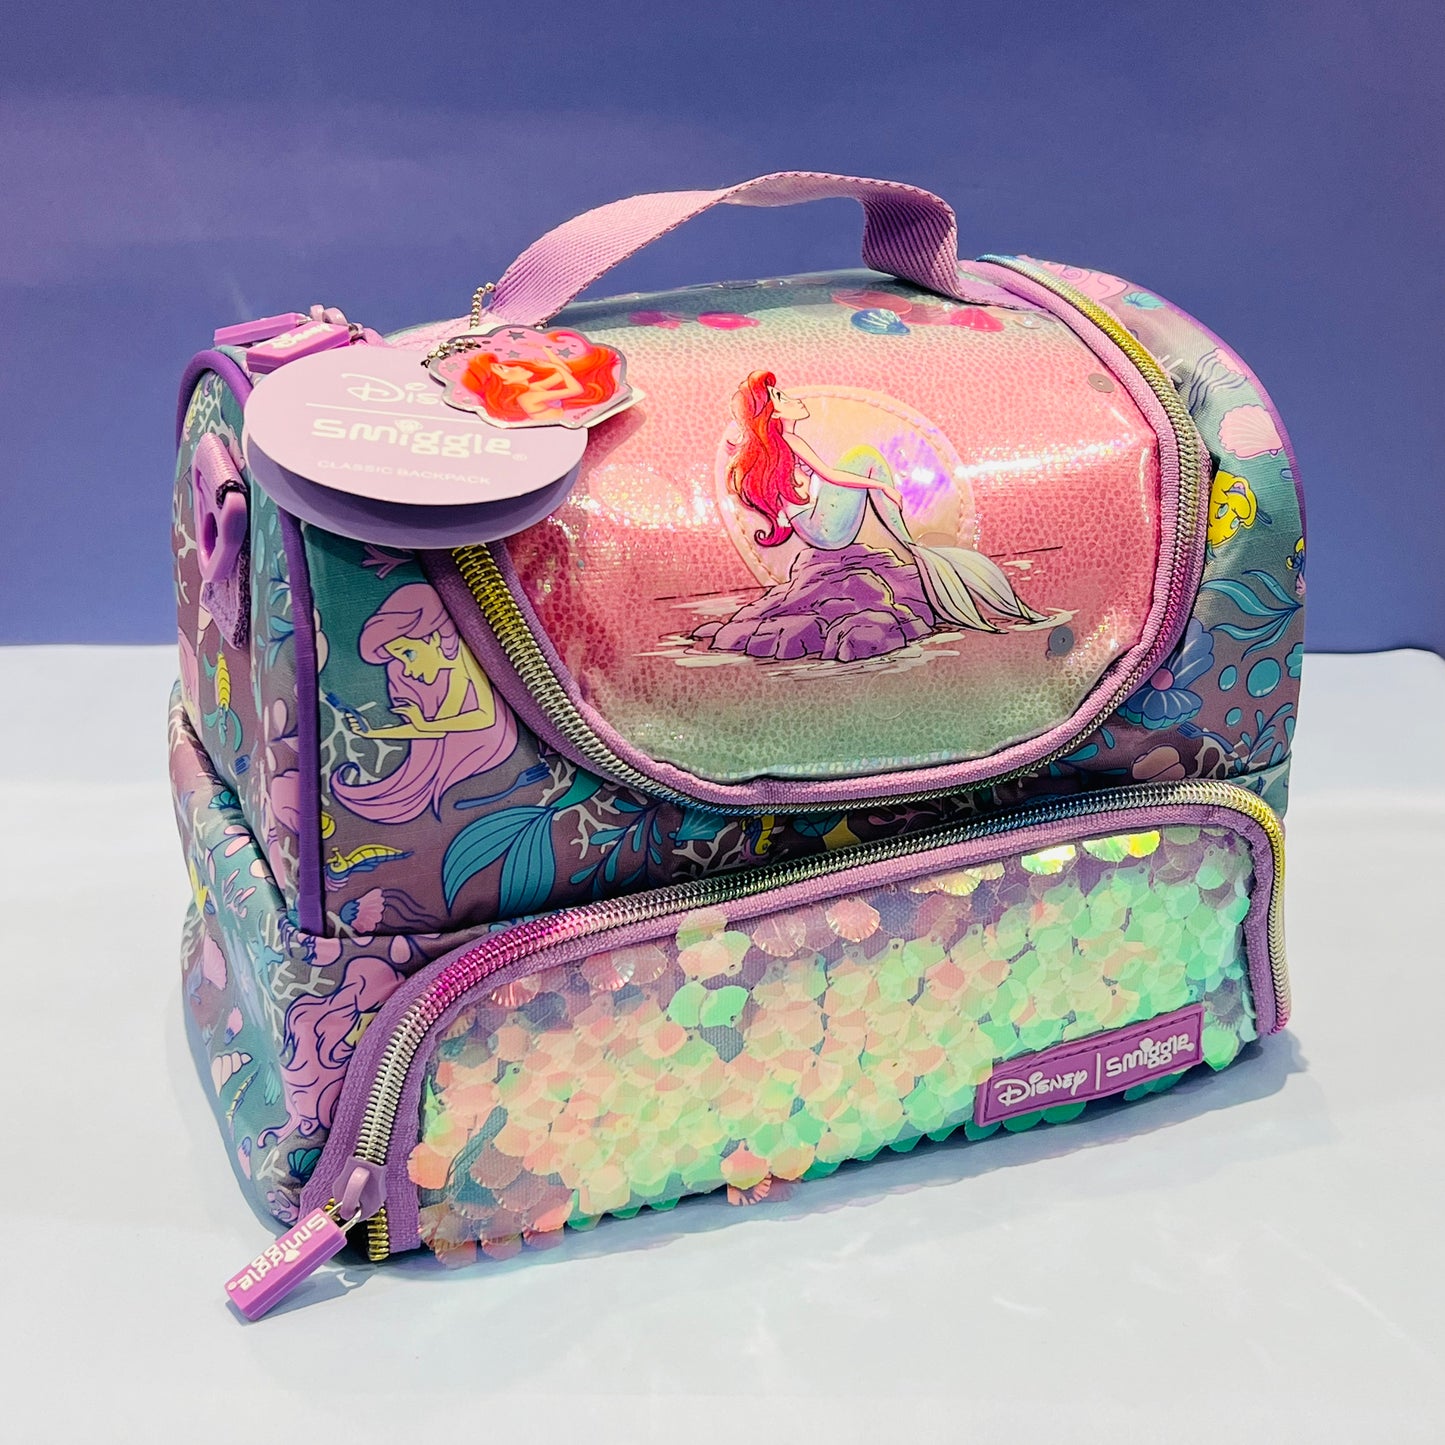 Smiggle’s Disney Mermaid Lunch Bags